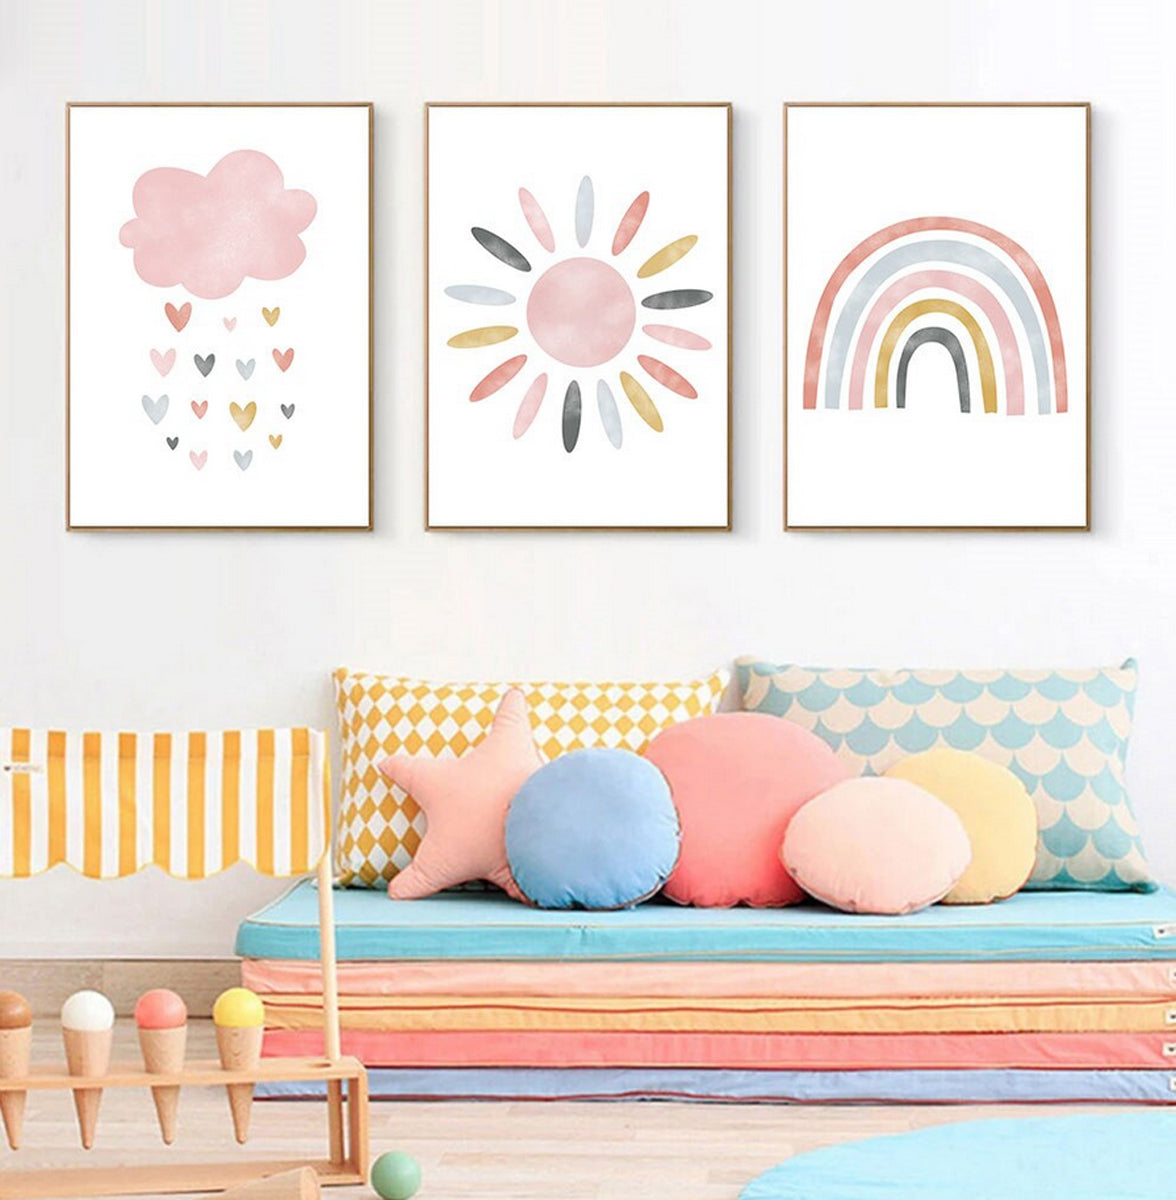 TPFLiving Poster Leinwand / Sonne, Wolken, Herzen, Regenbogen für Kinderzimmer - Auch im 3er Set / Verschiedene Größen - OHNE Rahmen - Modell k4236